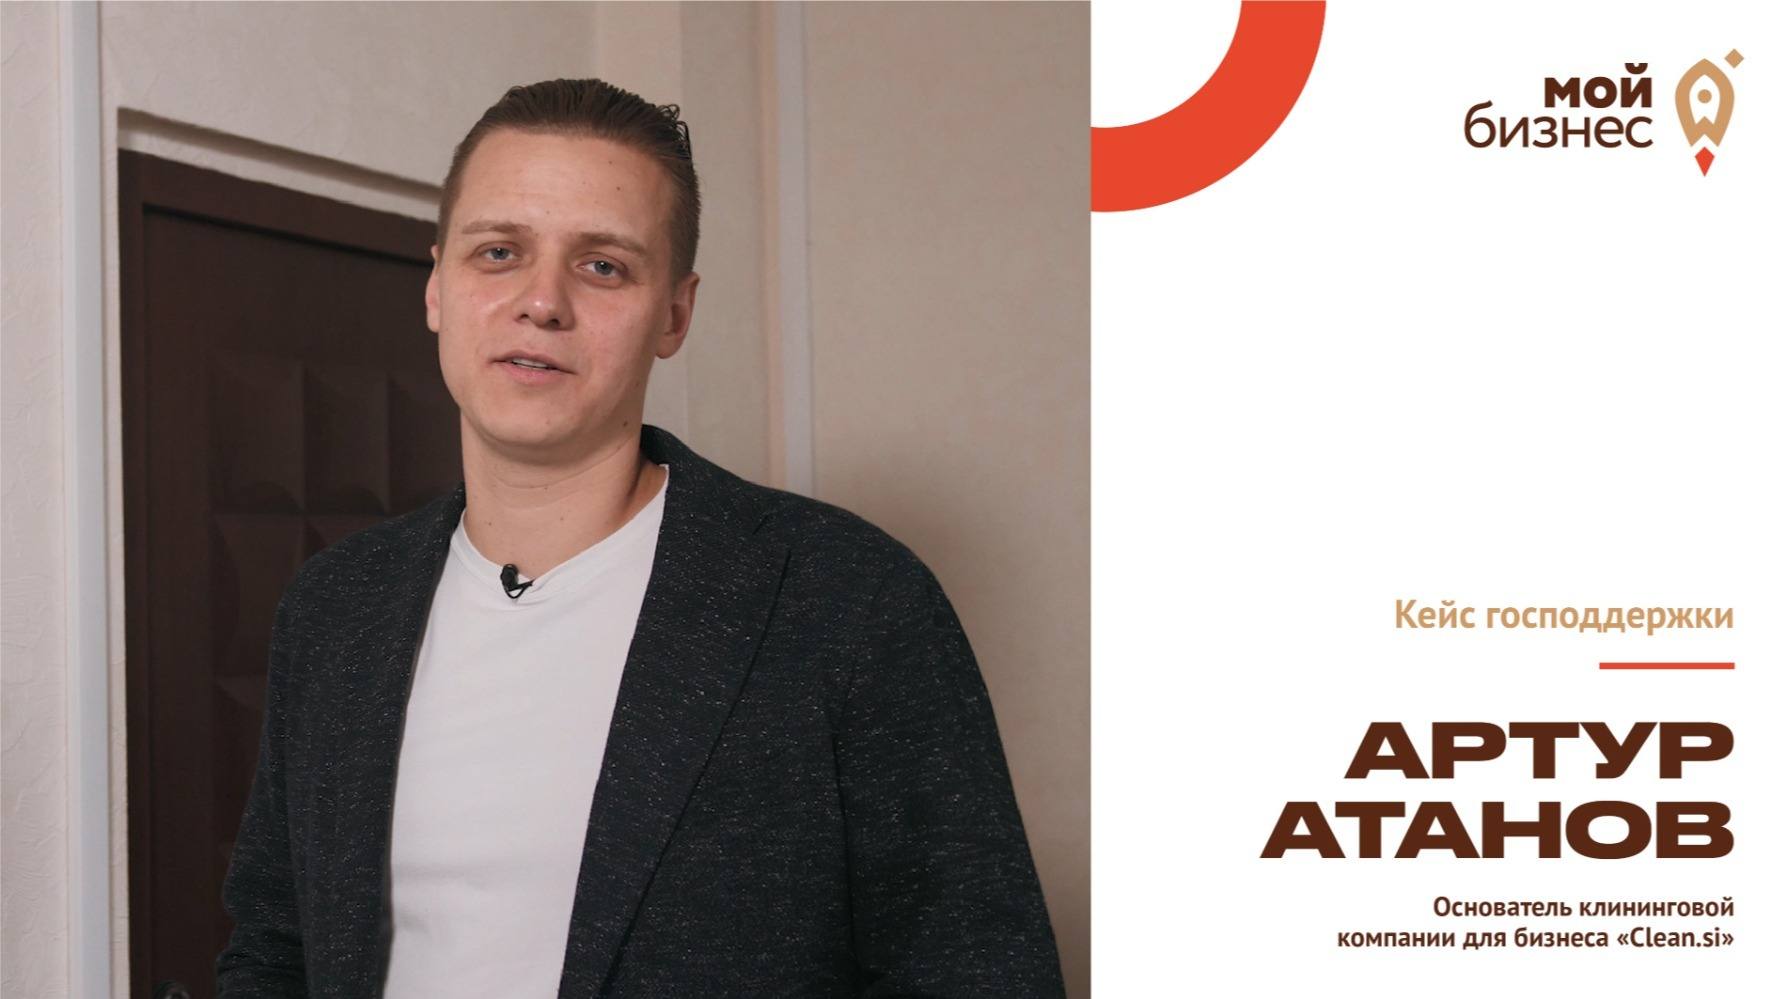 Артур Атанов: «Мы хотим изменить рынок клининга»